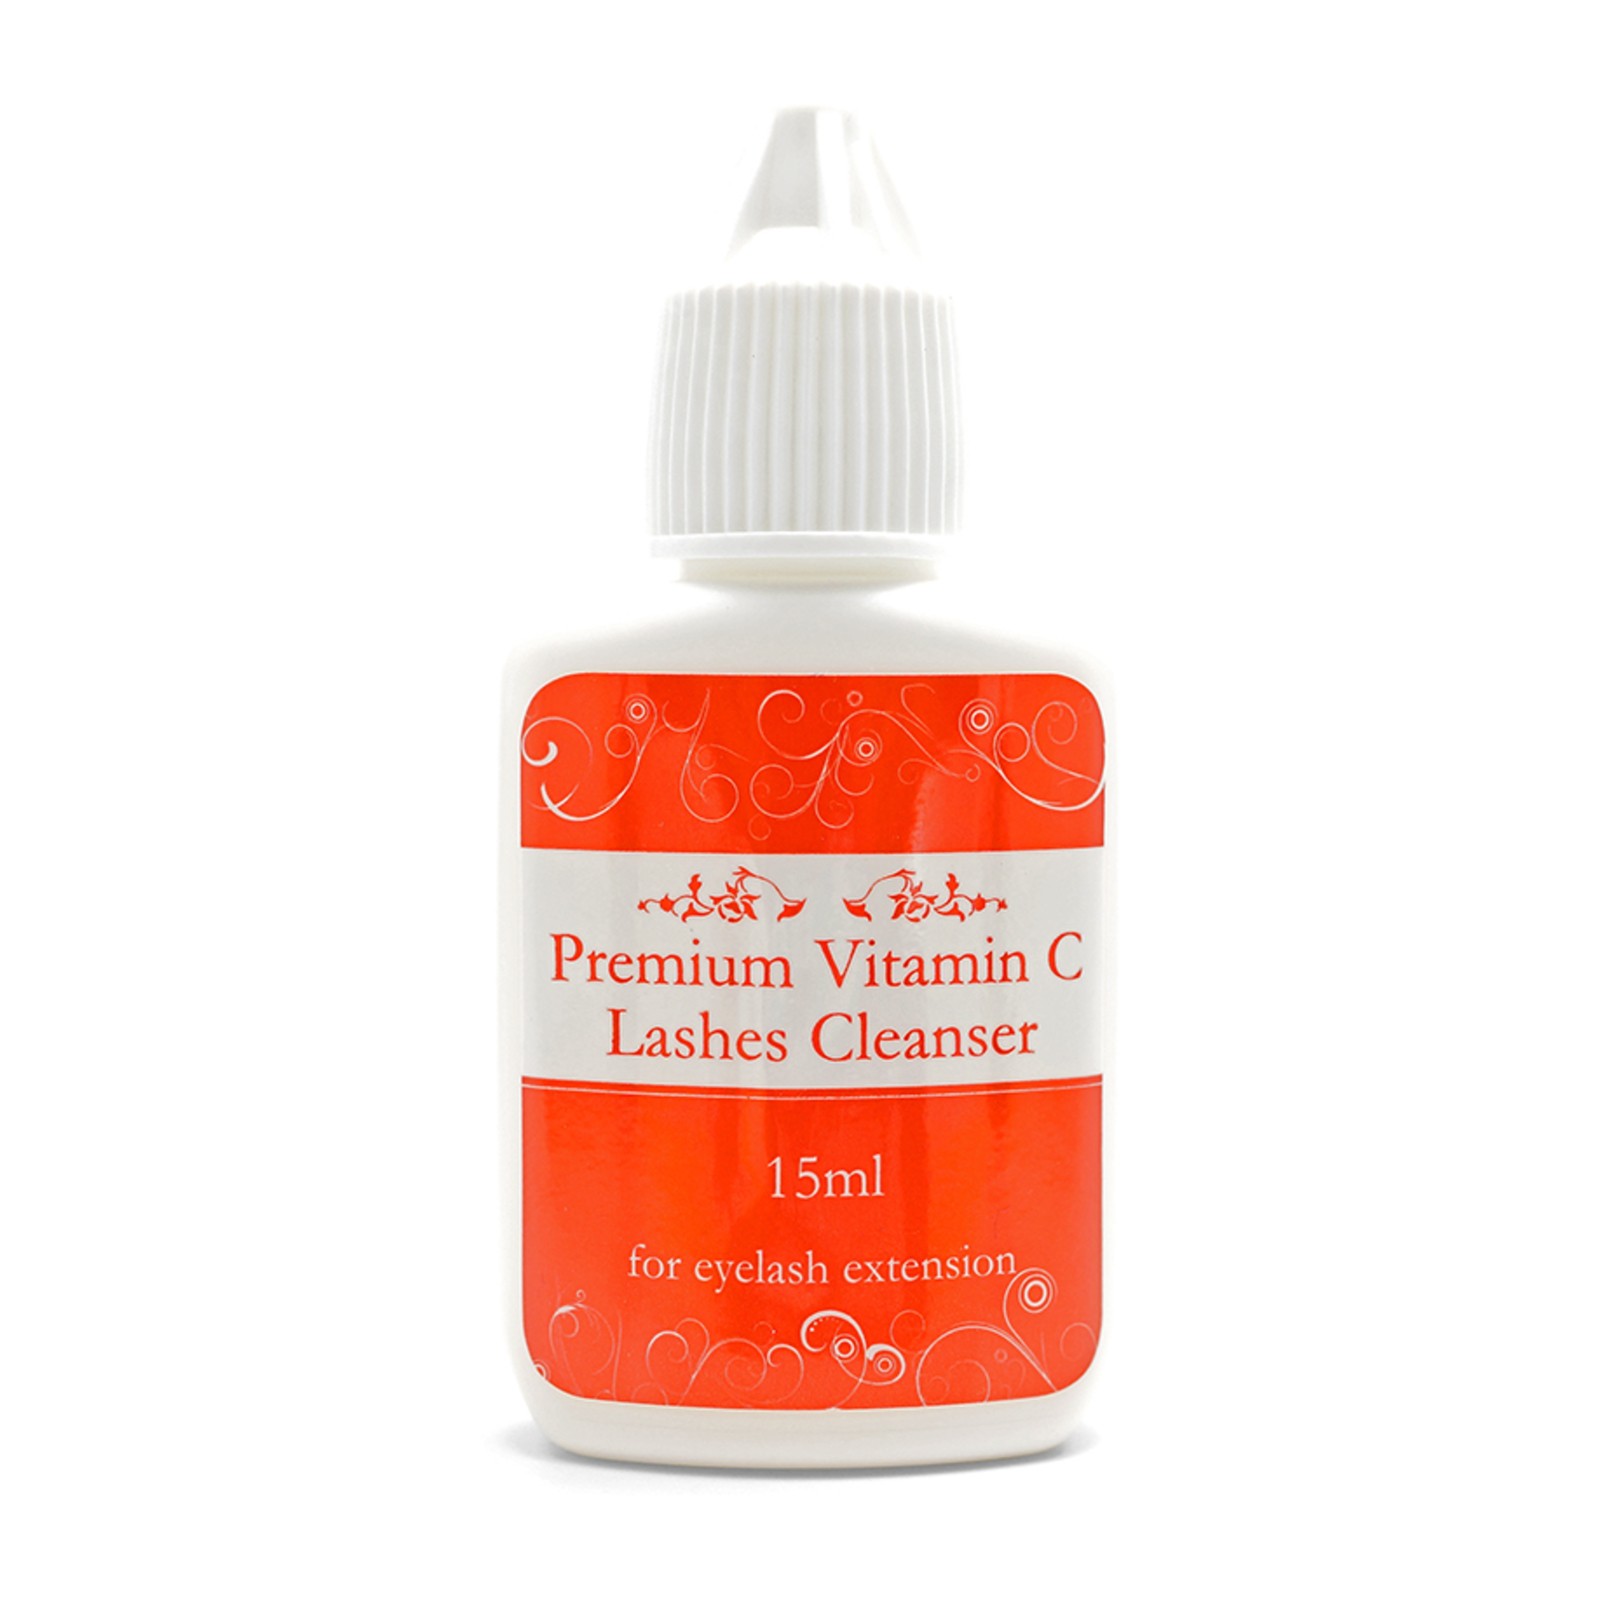 Premium Vitamin C Lashes Cleanser - 15ml